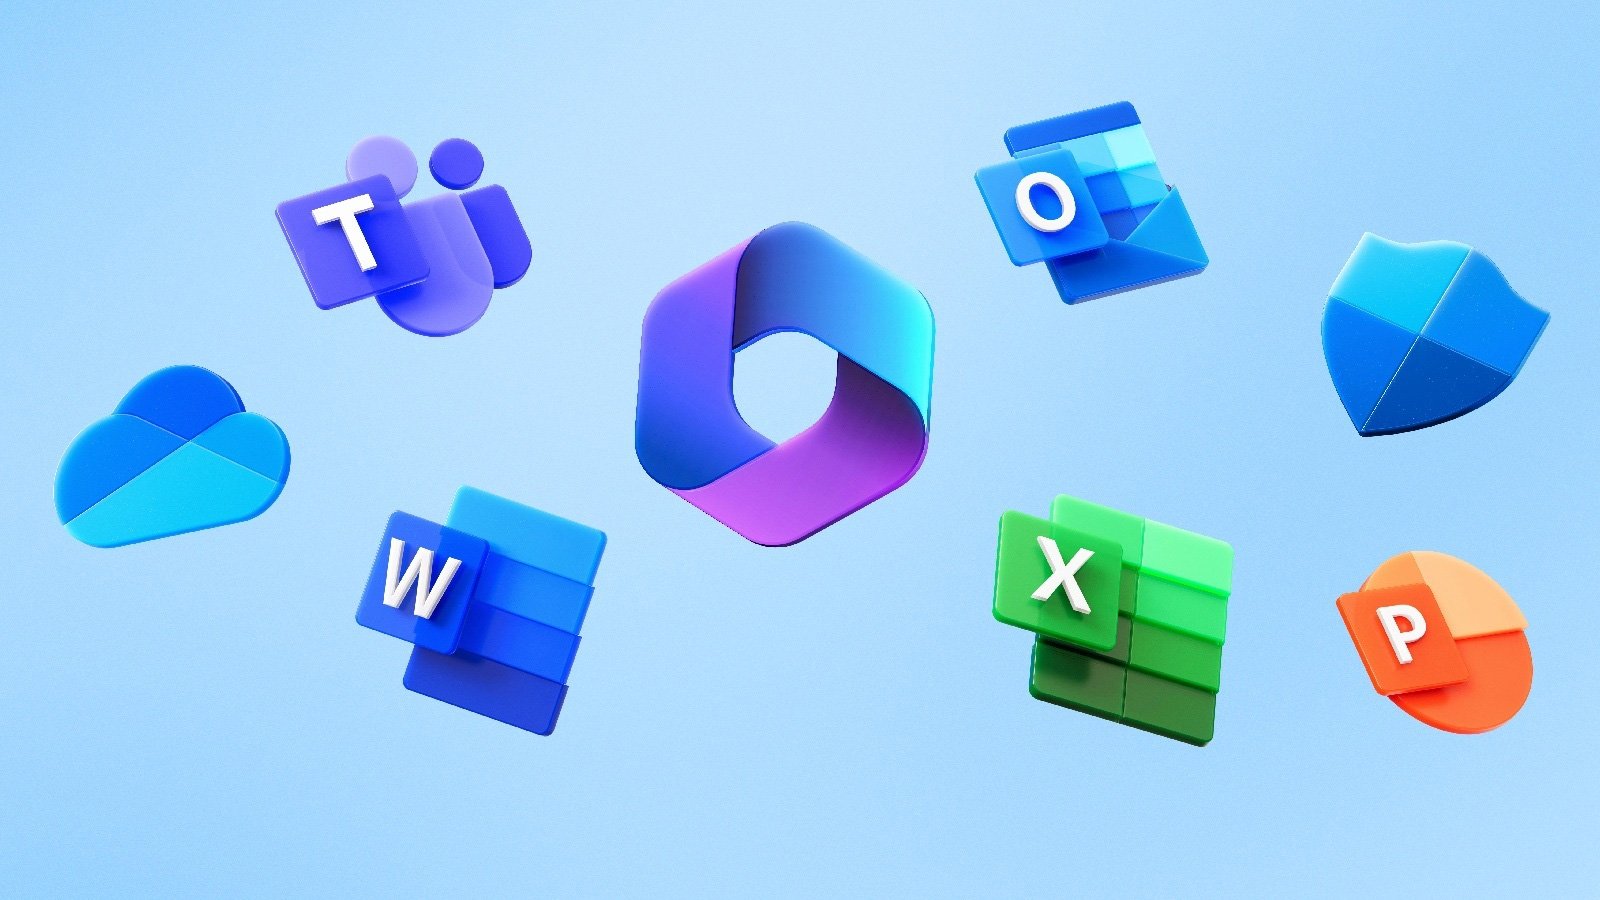 Iconos de productos de Microsoft 365